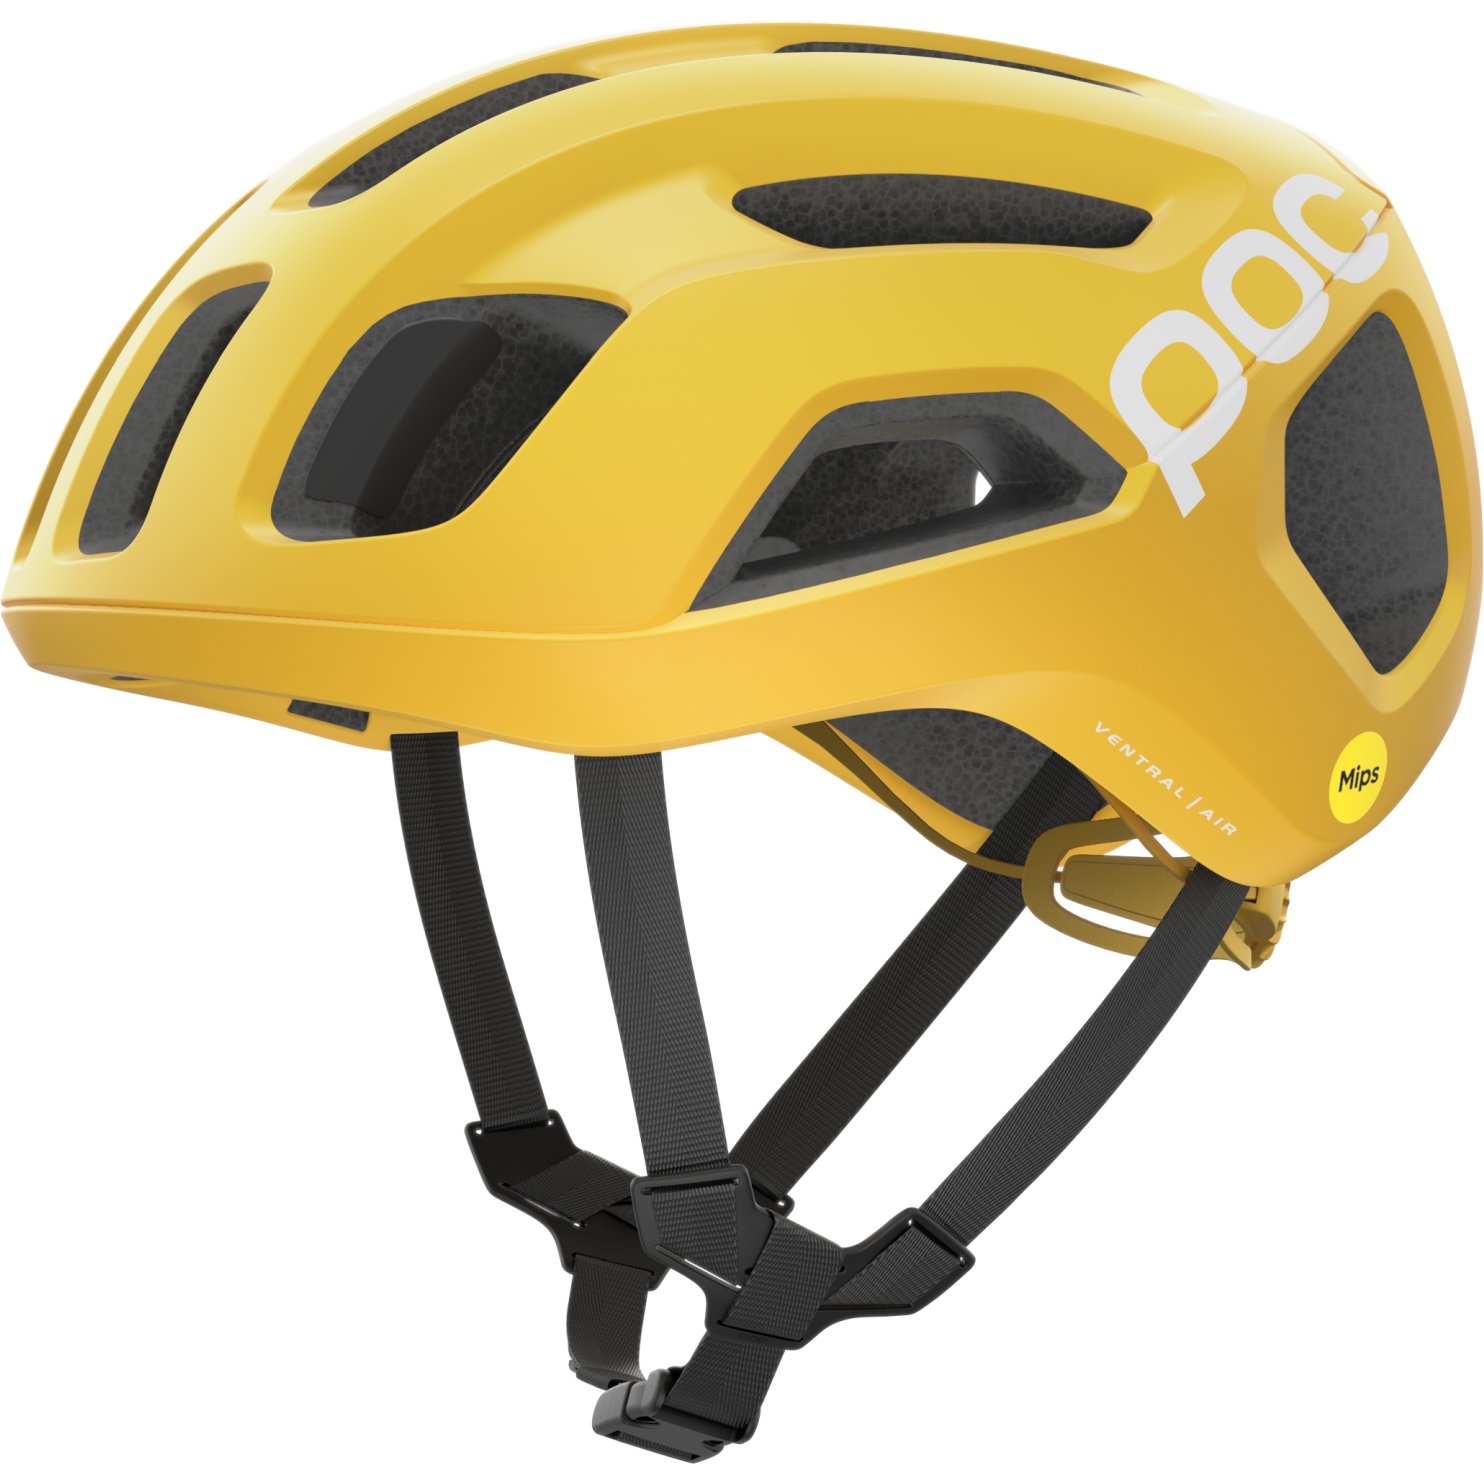 Produktbild von POC Ventral Air MIPS Helm - 1331 Aventurine Yellow Matt